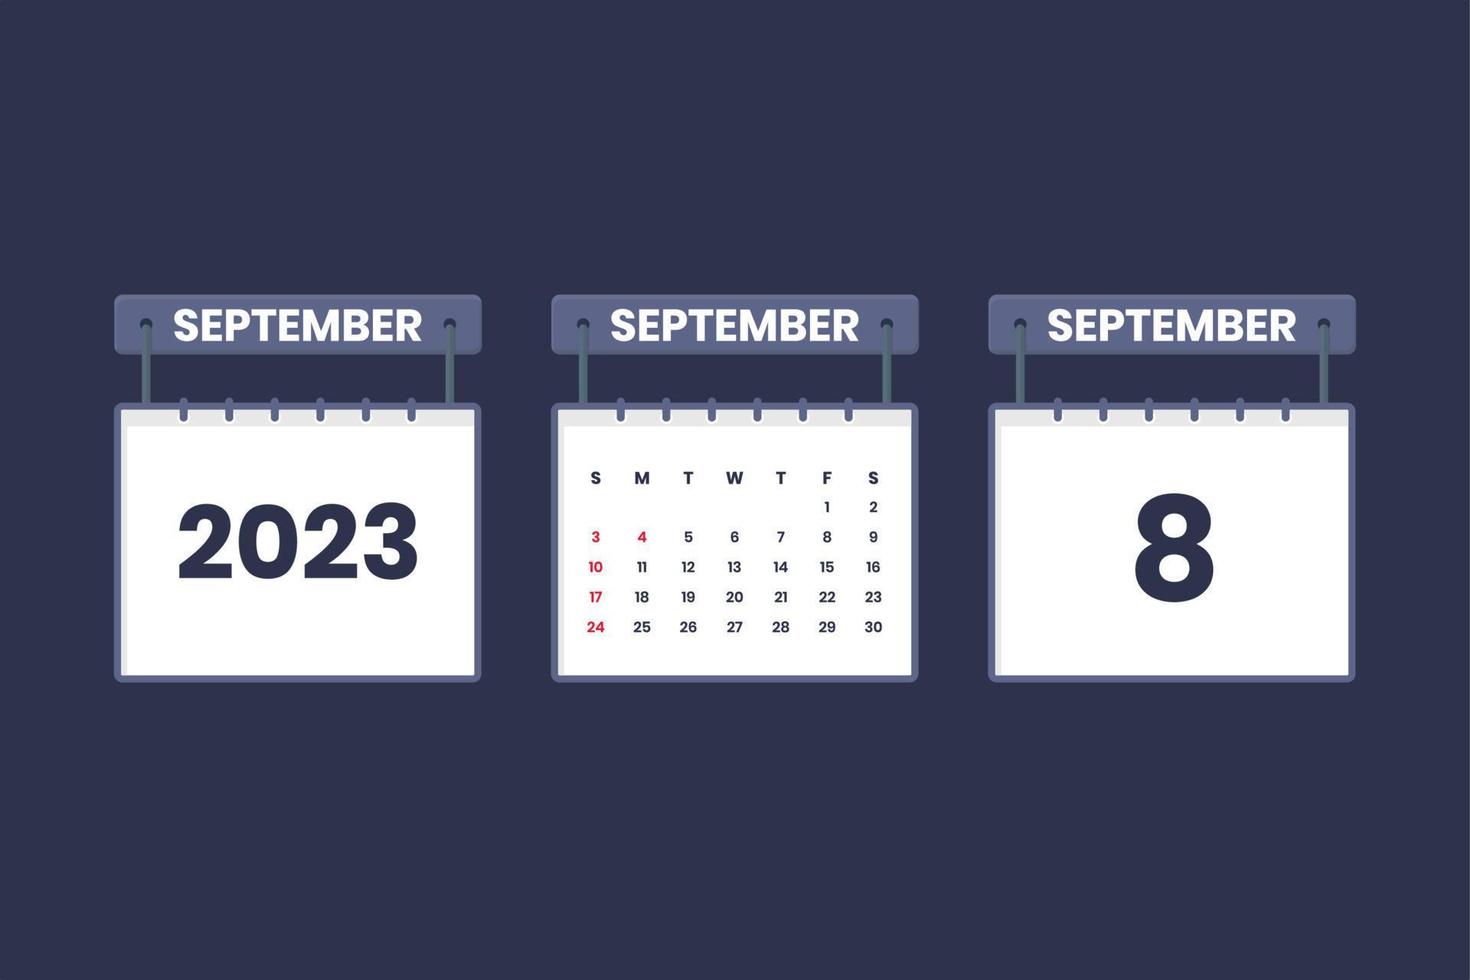 8. September 2023 Kalendersymbol für Zeitplan, Termin, wichtiges Datumskonzept vektor